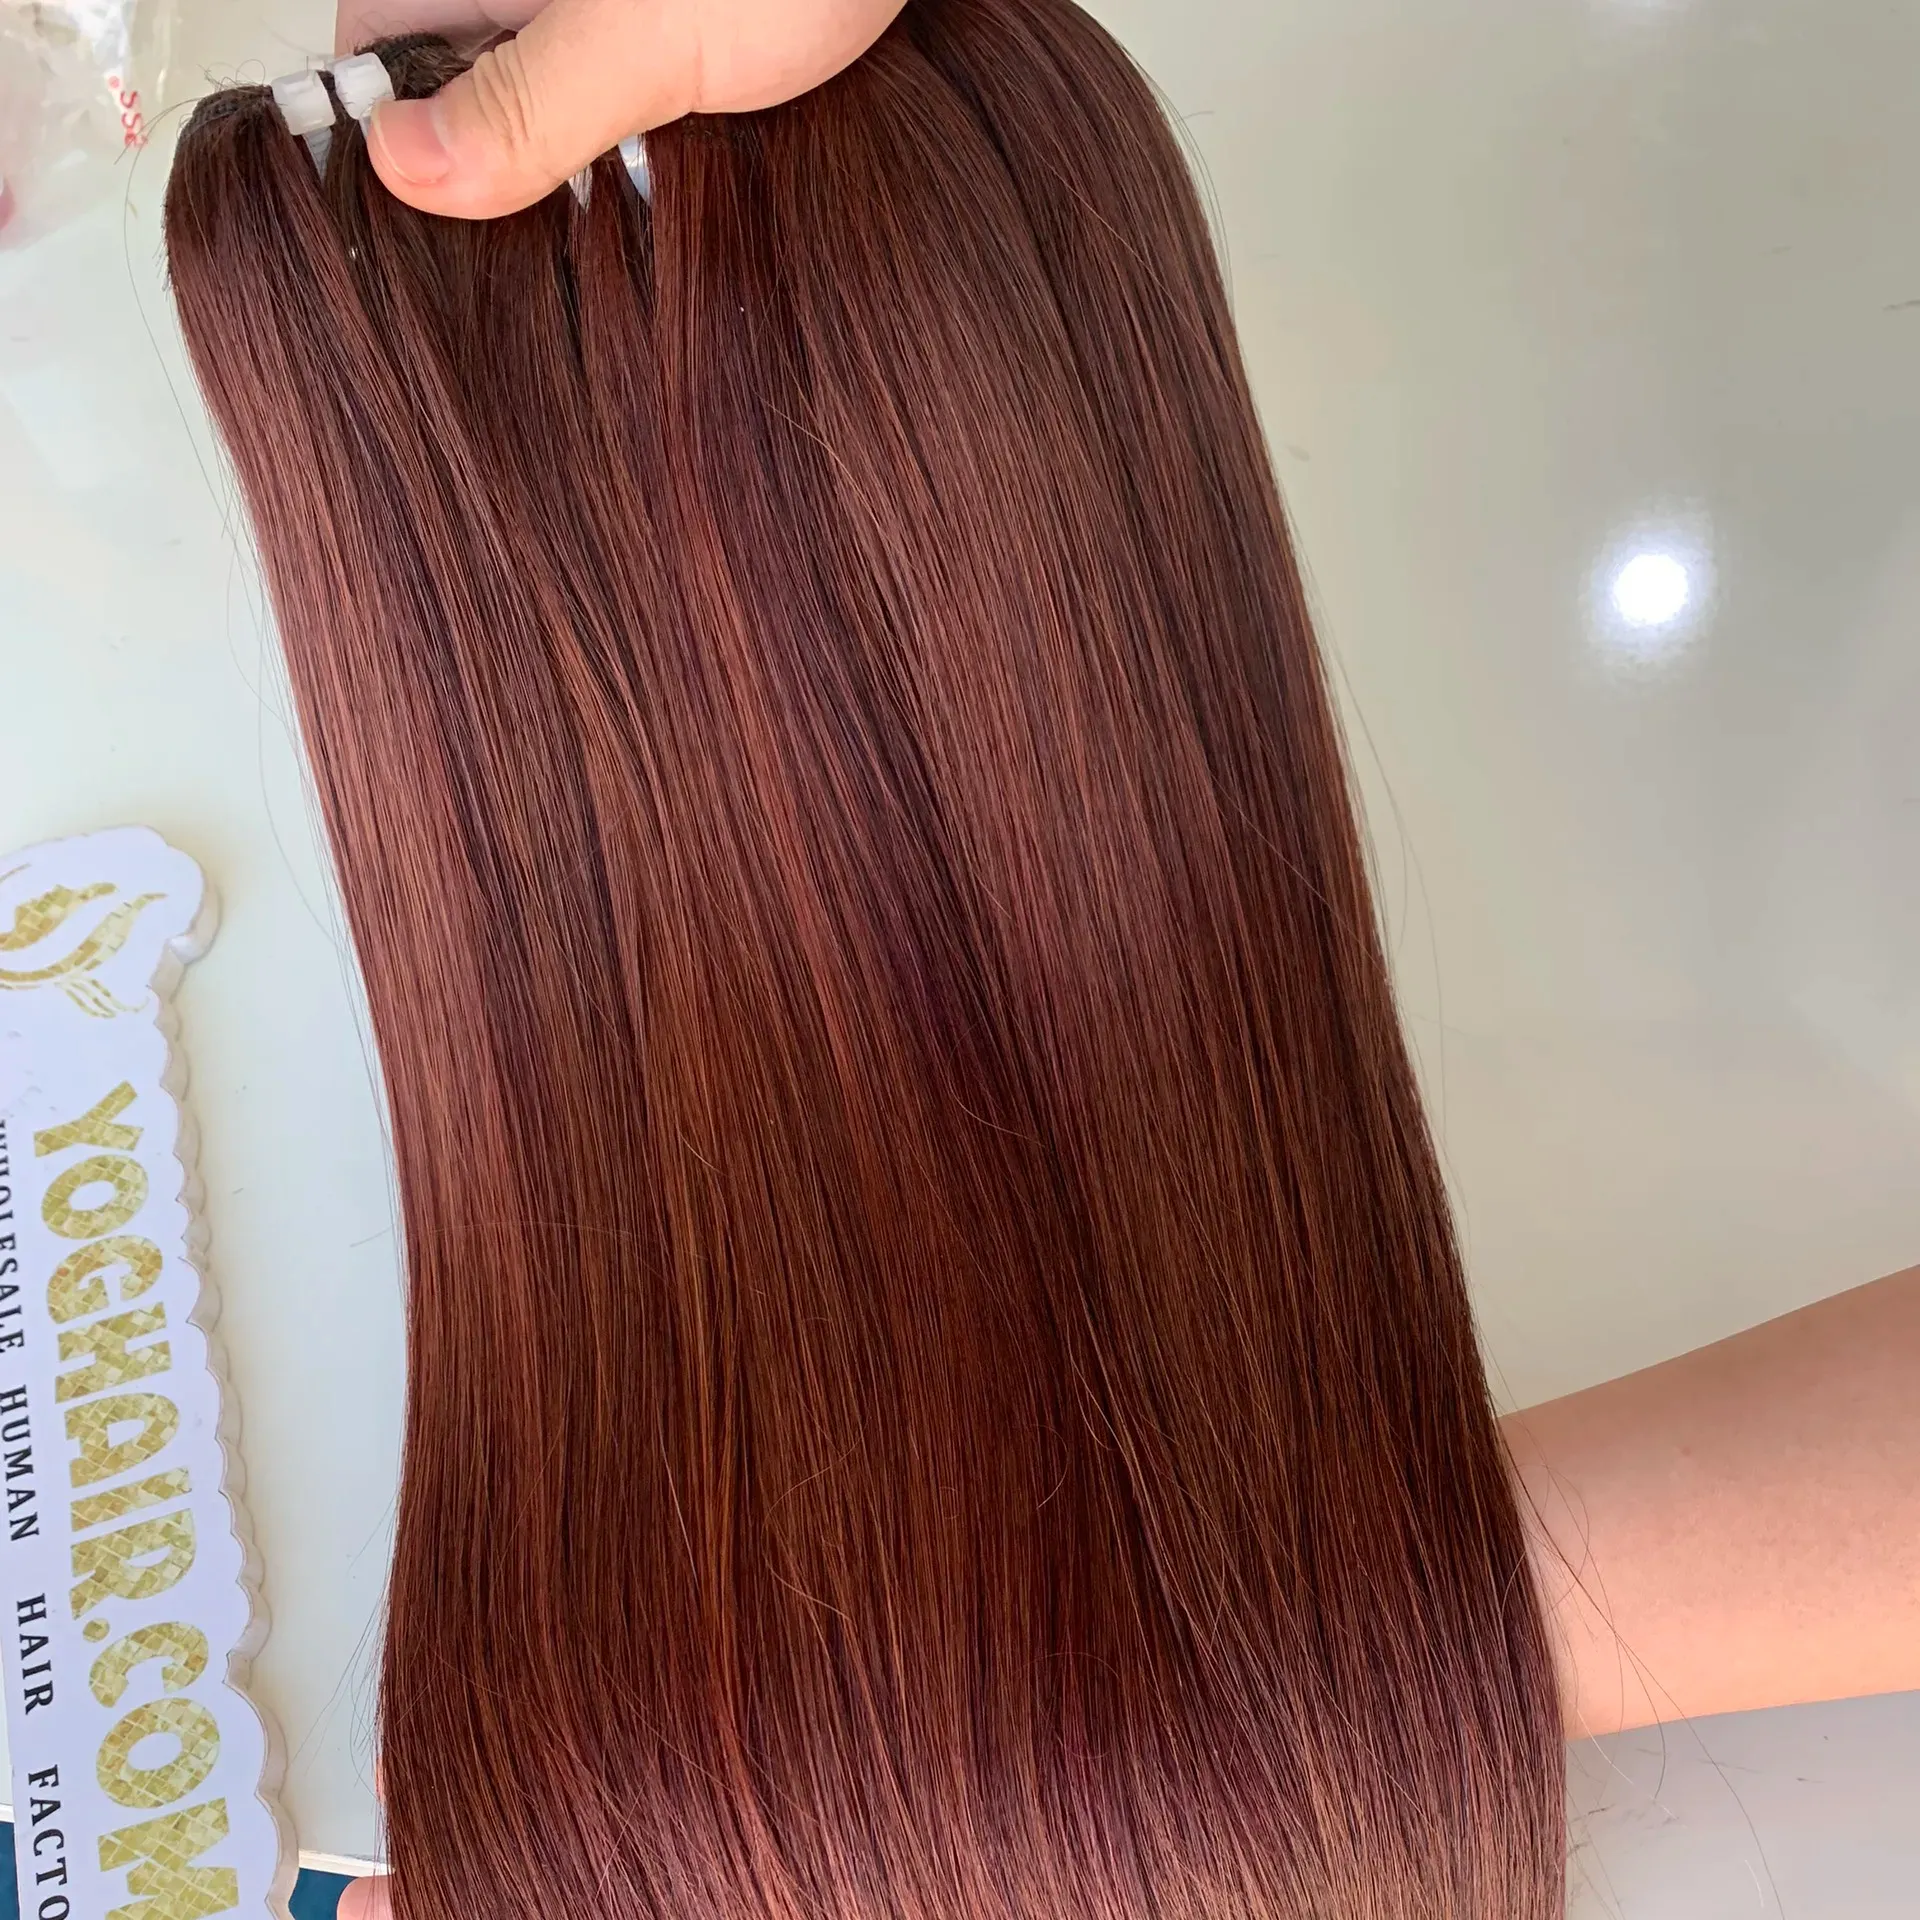 Atkı saç ekleme uzun düz 100% Vietnam insan saçı tüm uzunluk seçenekleri toptan fiyat Yoghair fabrika hızlı teslimat